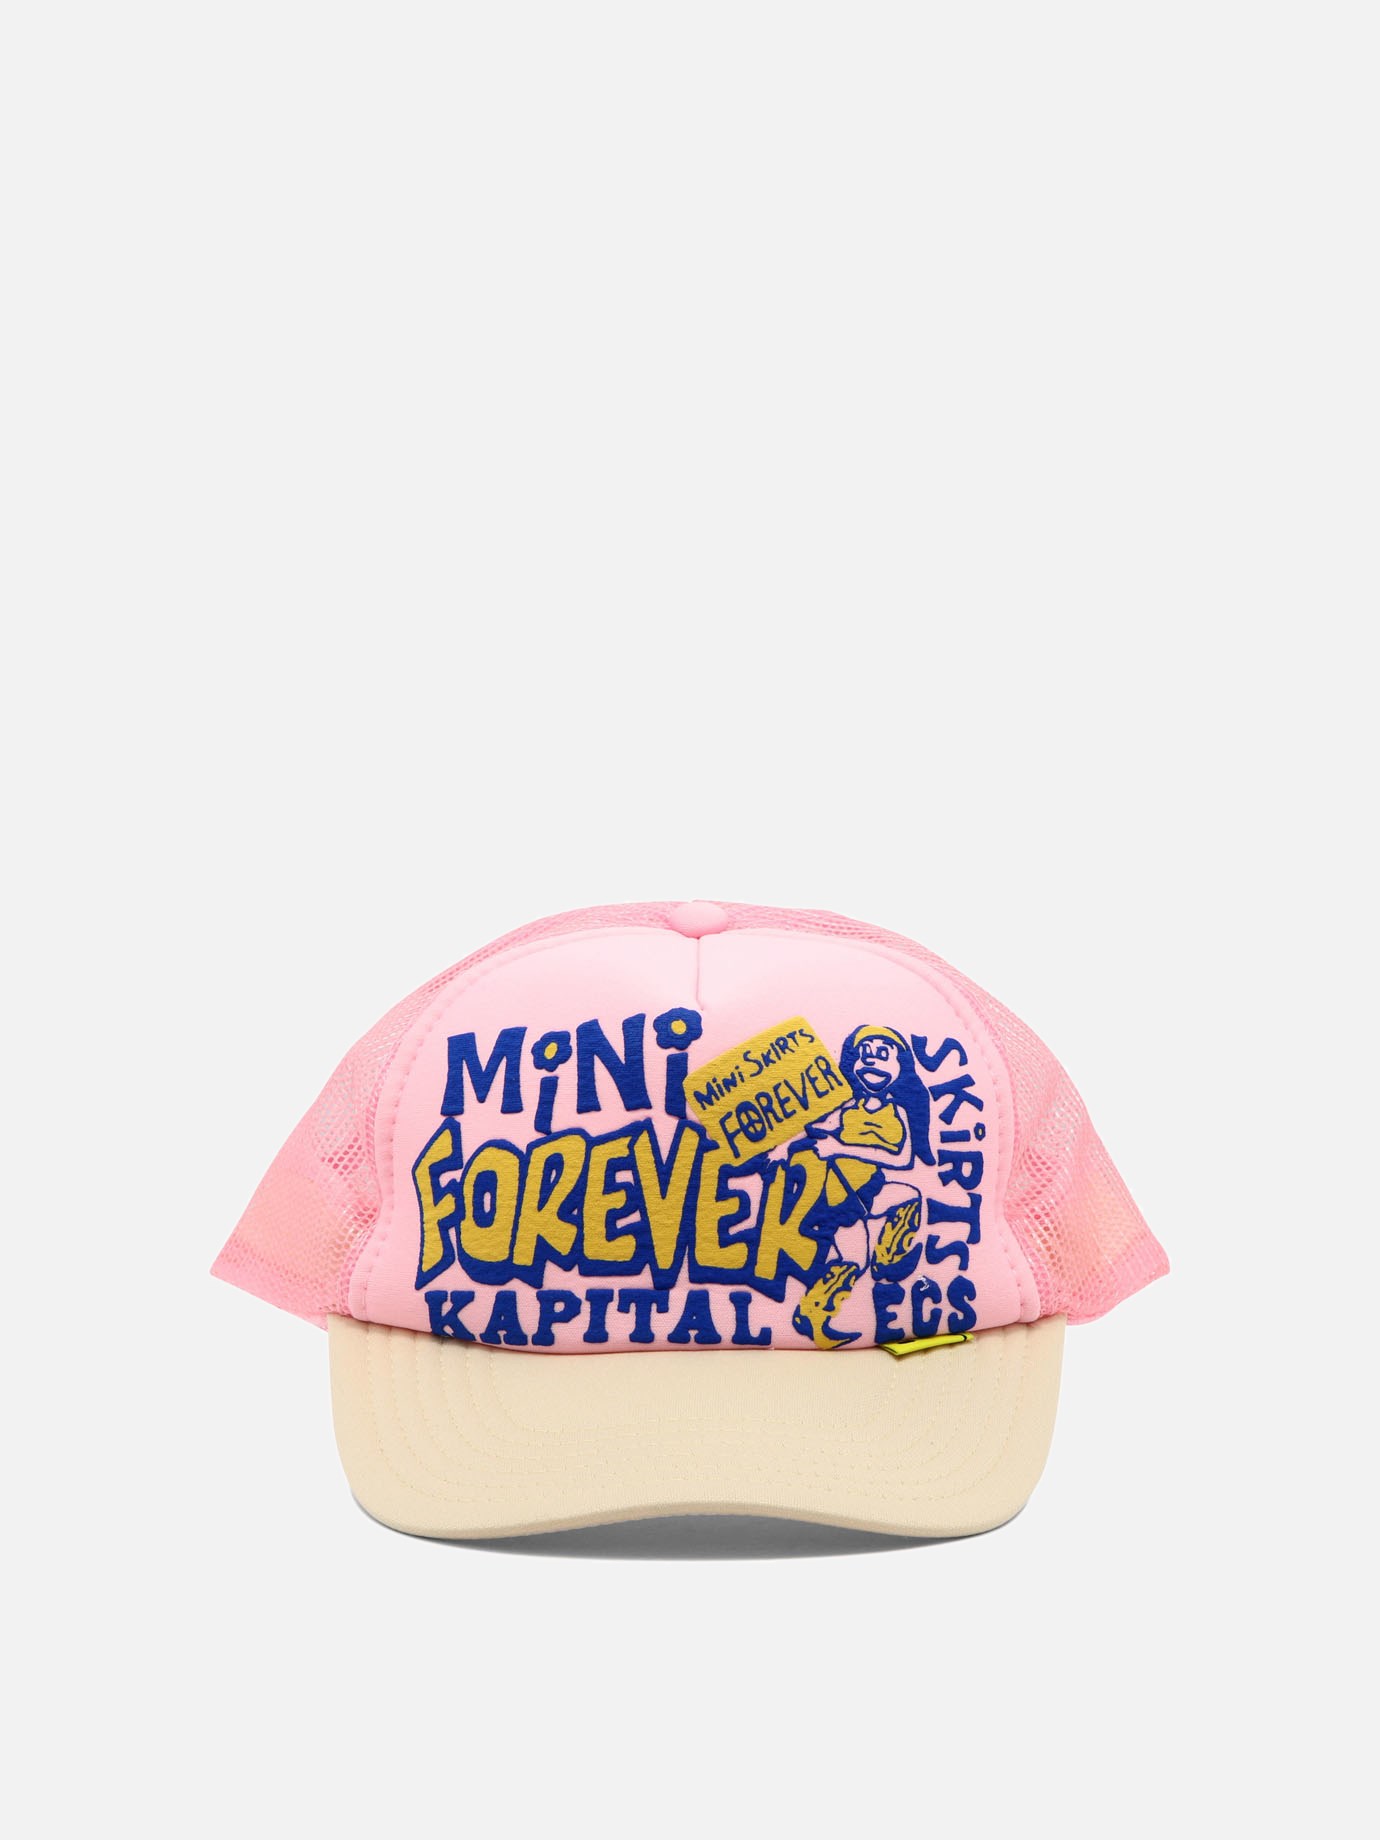  Mini Skirts Forever  trucker hatby Kapital - 4